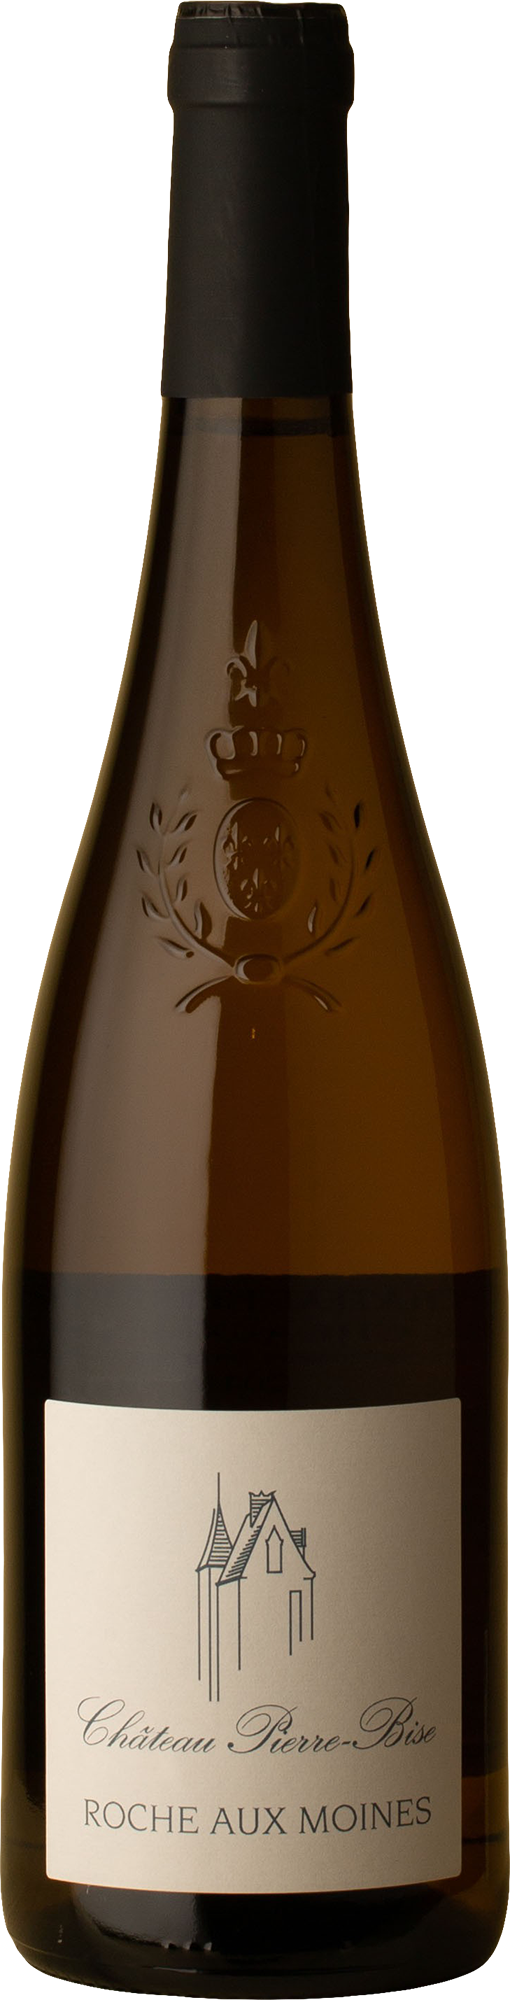 Château Pierre-Bise - Savennières Roche aux Moines Chenin Blanc 2018 White Wine